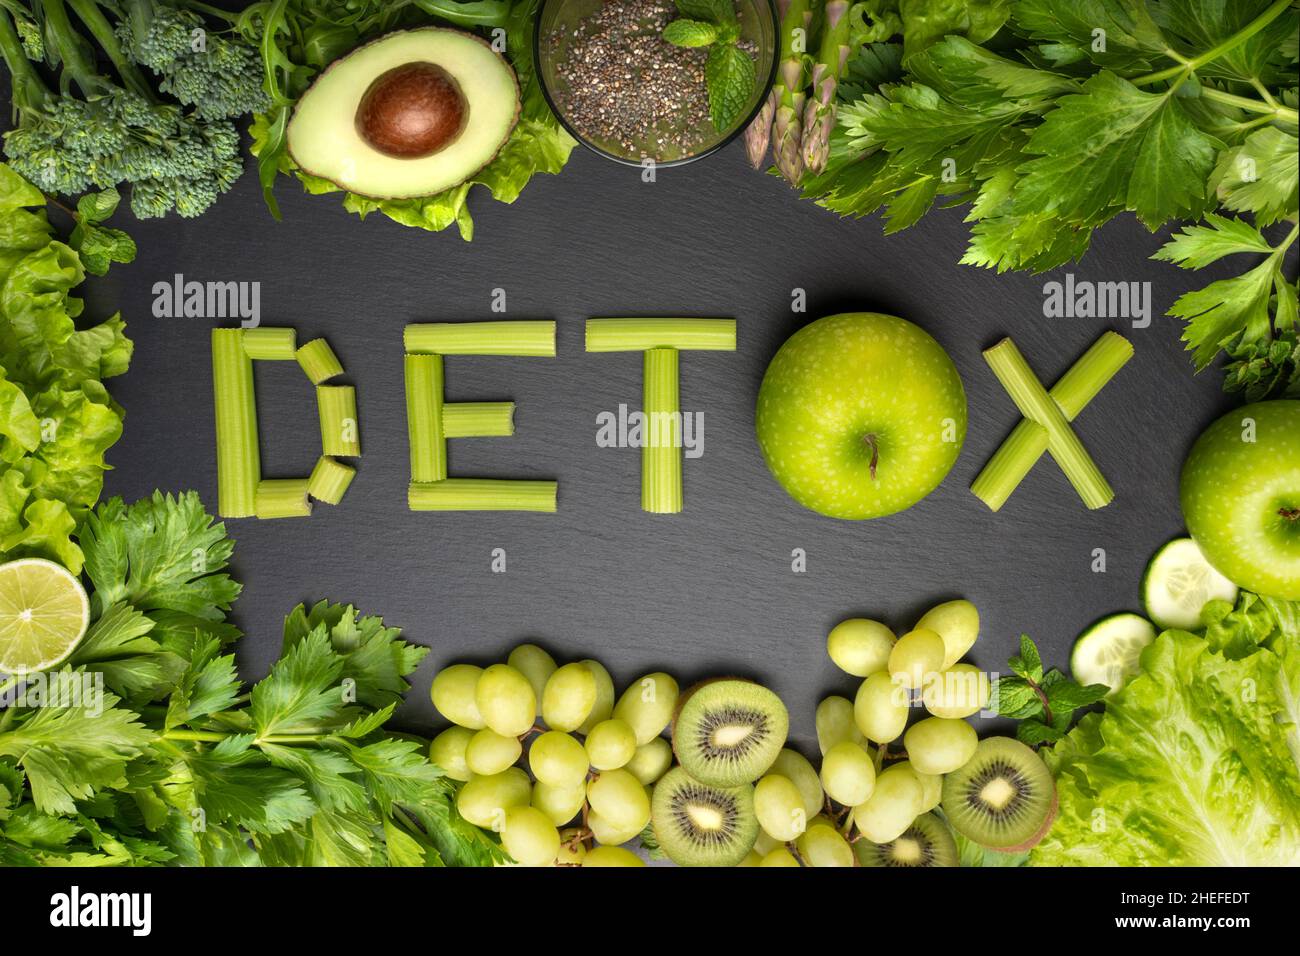 Vista dall'alto di verdure fresche e frutta verdi con parola detox su sfondo nero. Disintossicare la dieta, mangiare sano e pulito Foto Stock